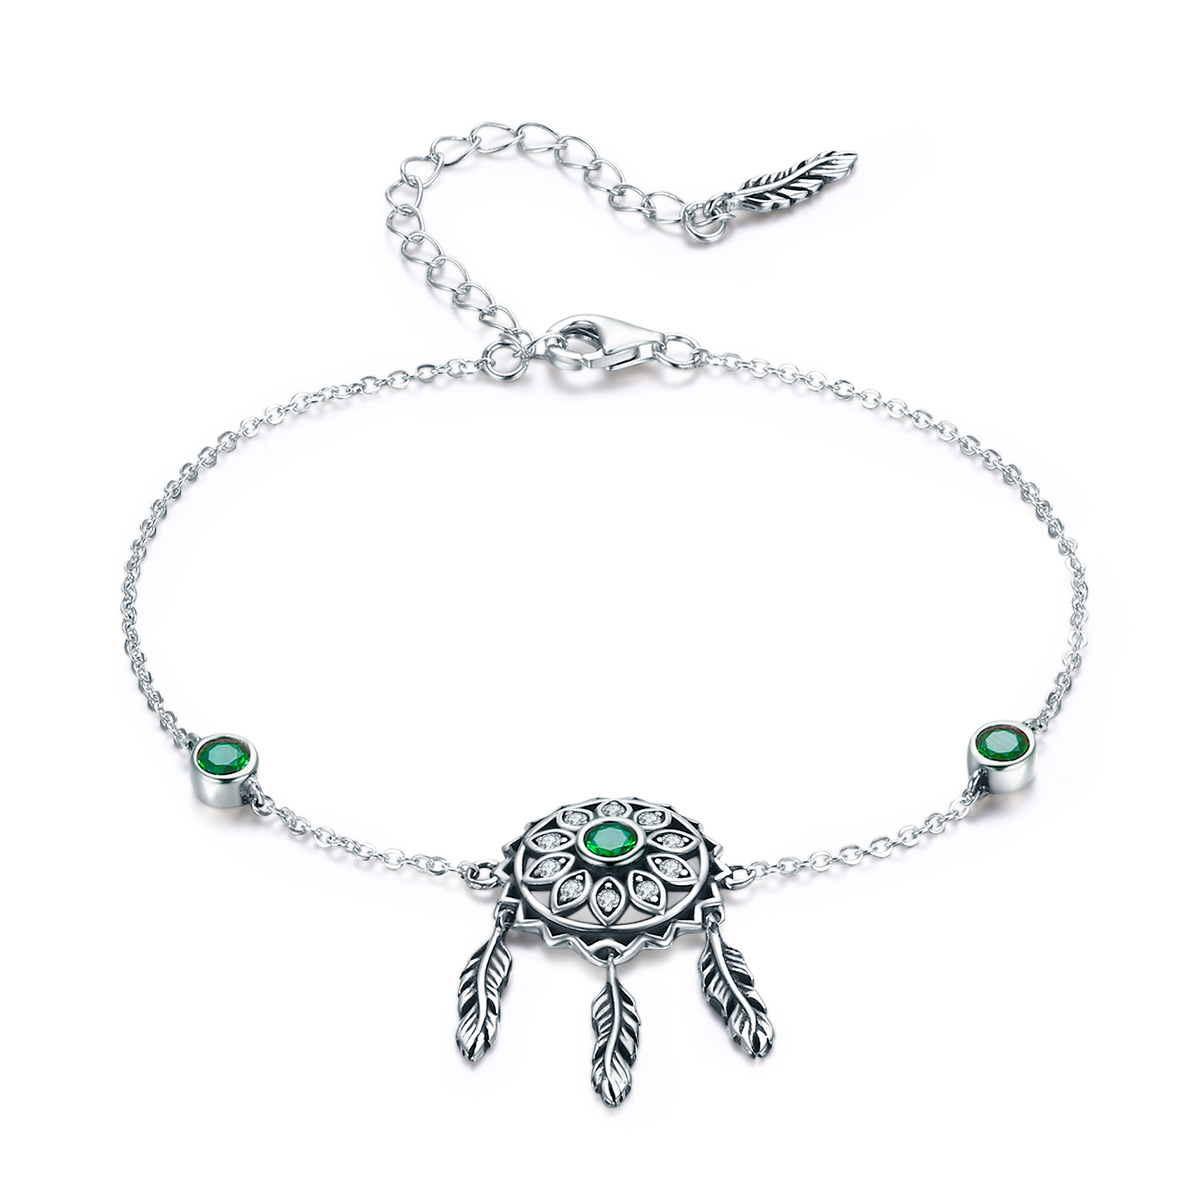 Levně Linda's Jewelry Stříbrný náramek Lapač snů Zelené Slunce Ag 925/1000 INR106